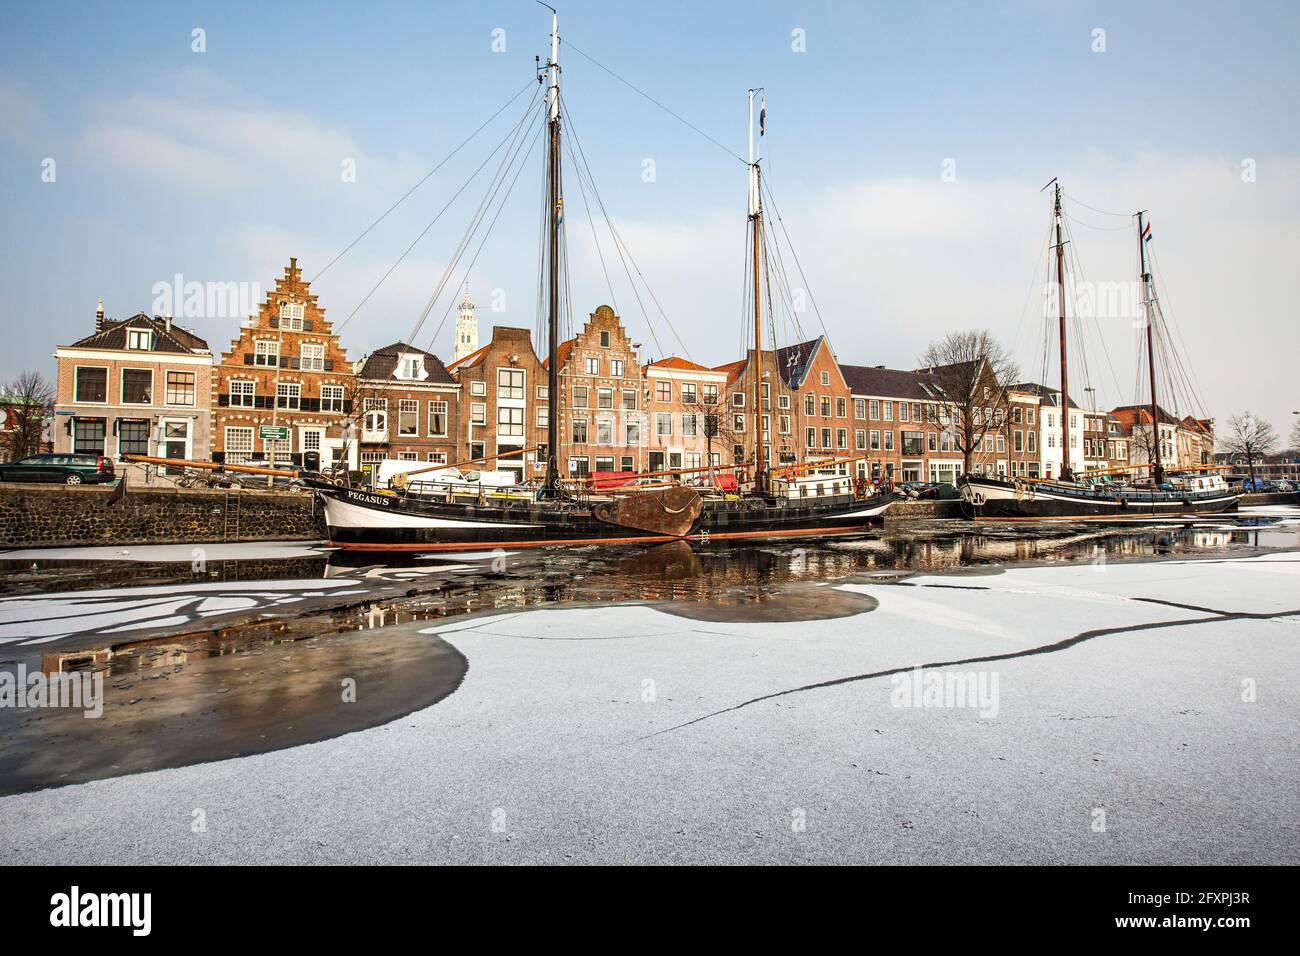 Façades de maisons et bateaux amarrés dans le canal gelé de la rivière Spaarne, Haarlem, quartier d'Amsterdam, Hollande du Nord, pays-Bas, Europe Banque D'Images